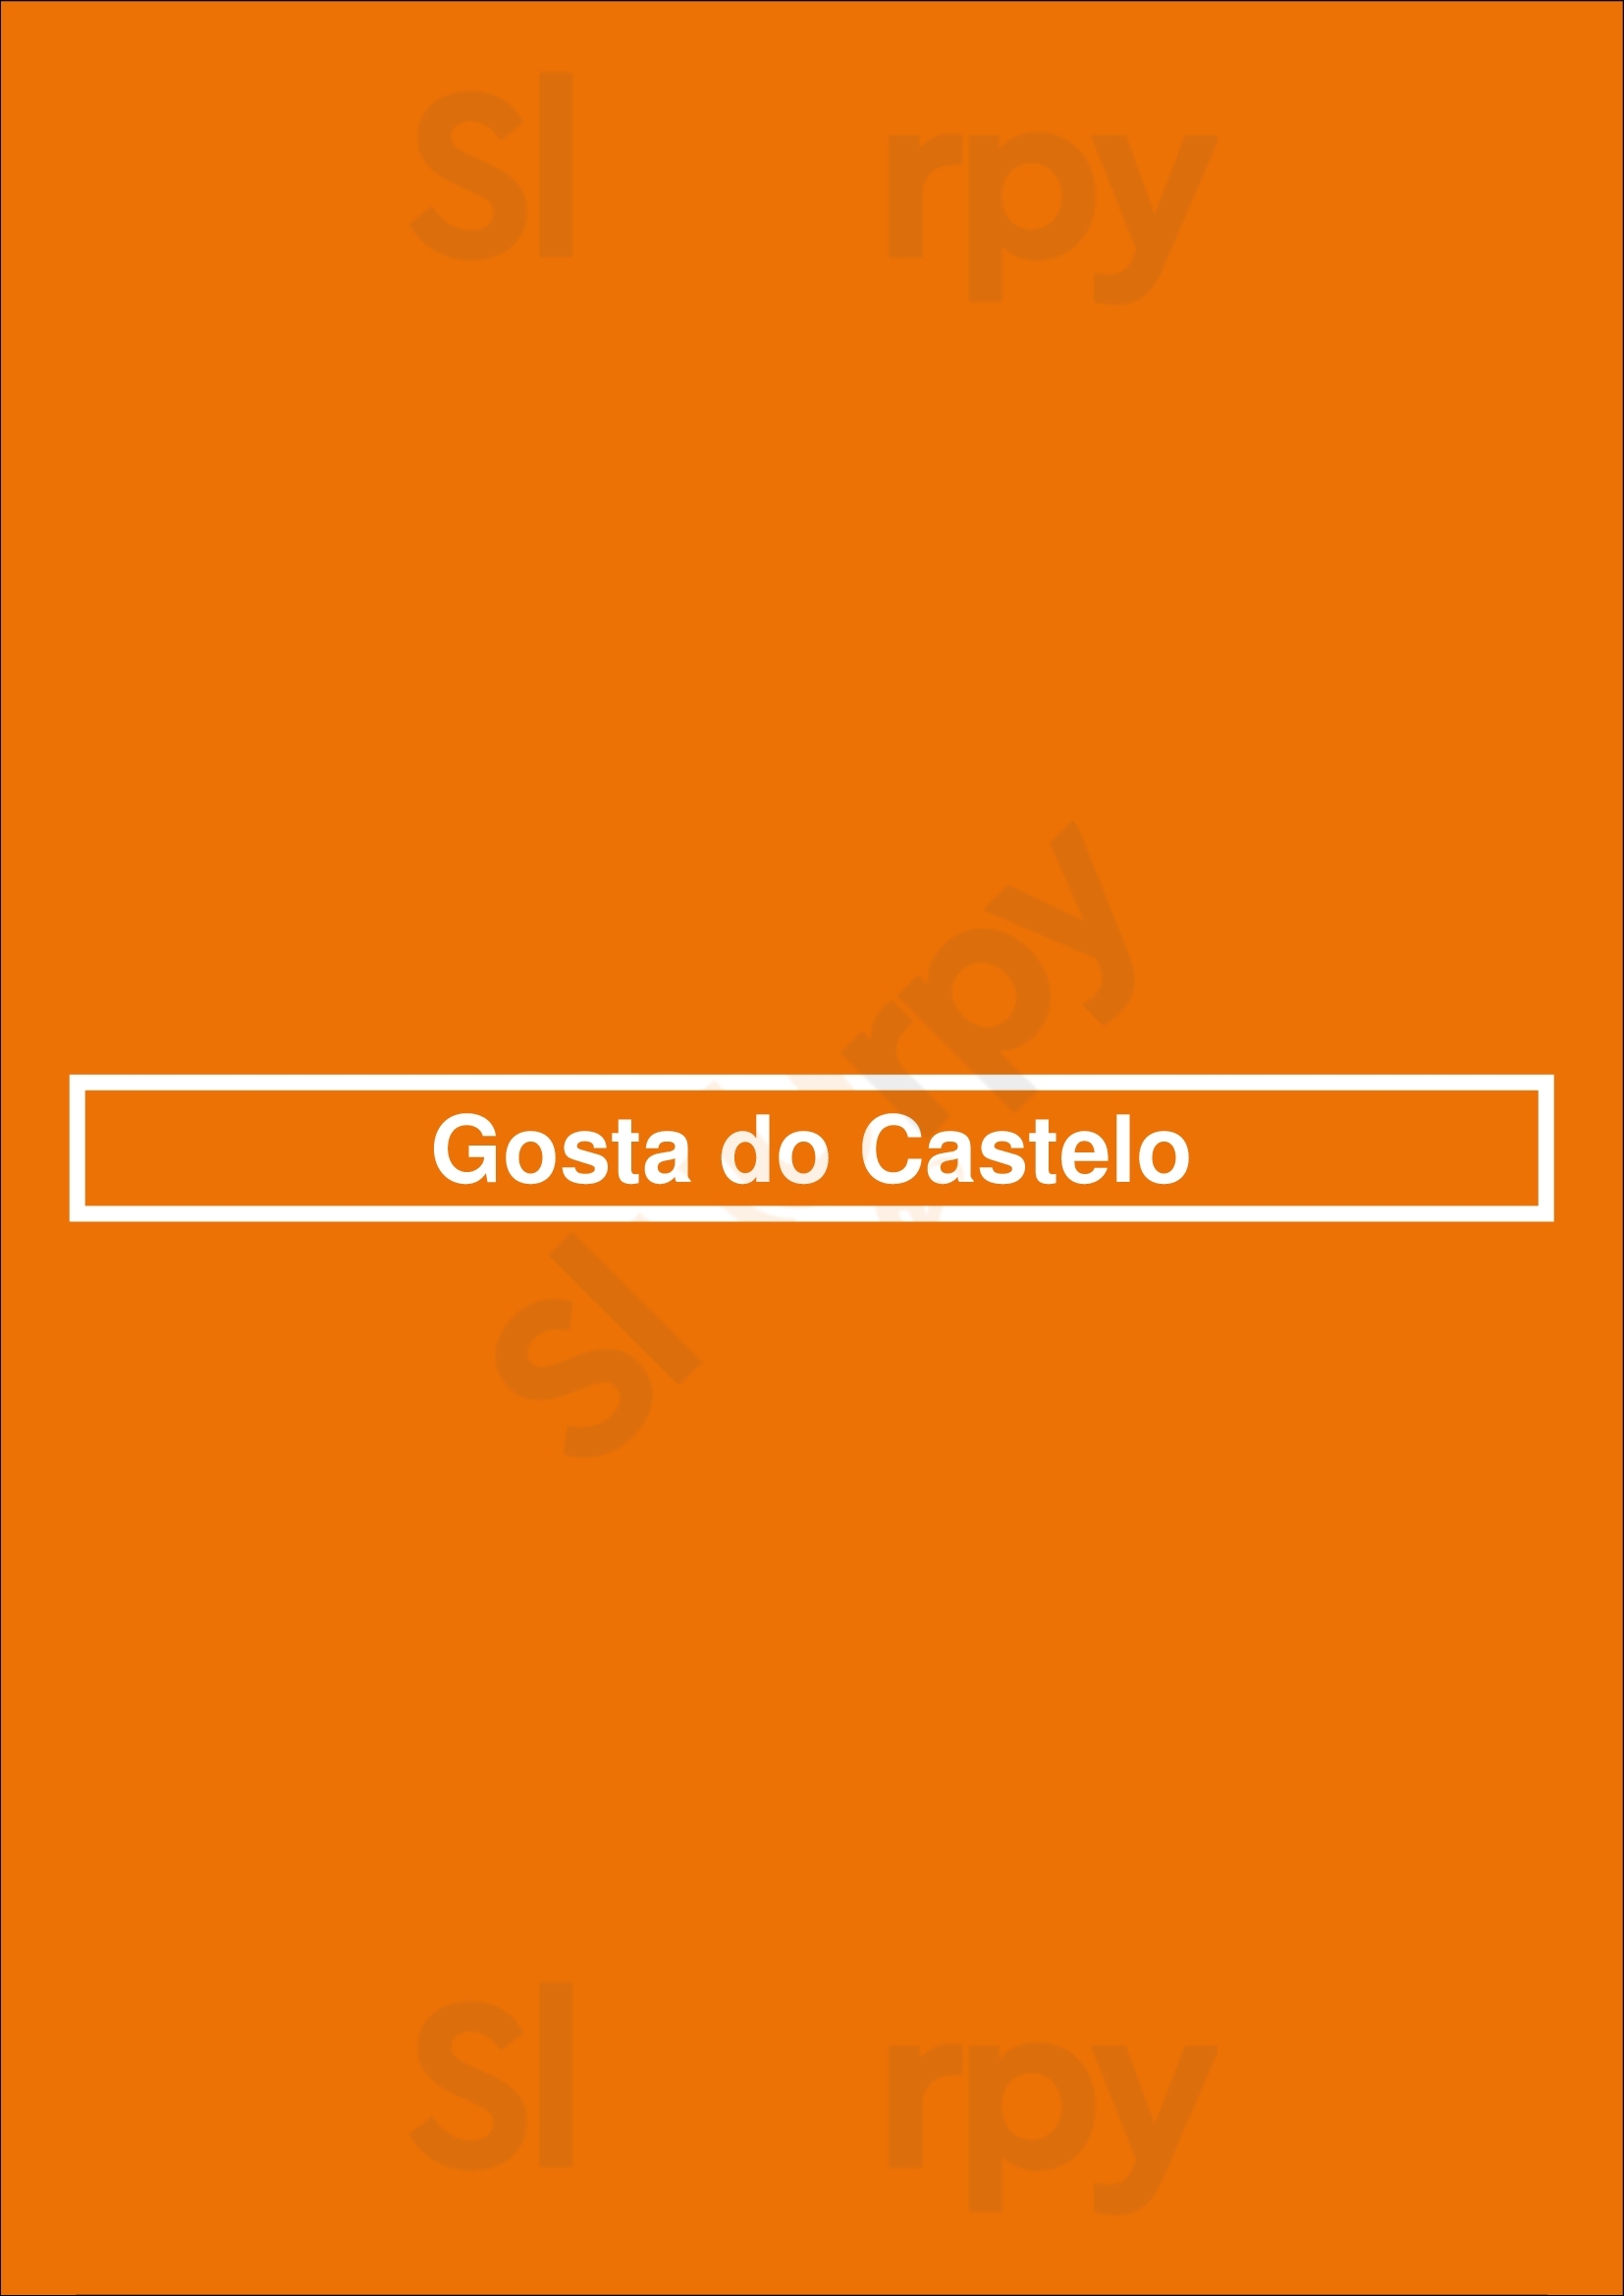 Gosta Do Castelo Lisboa Menu - 1